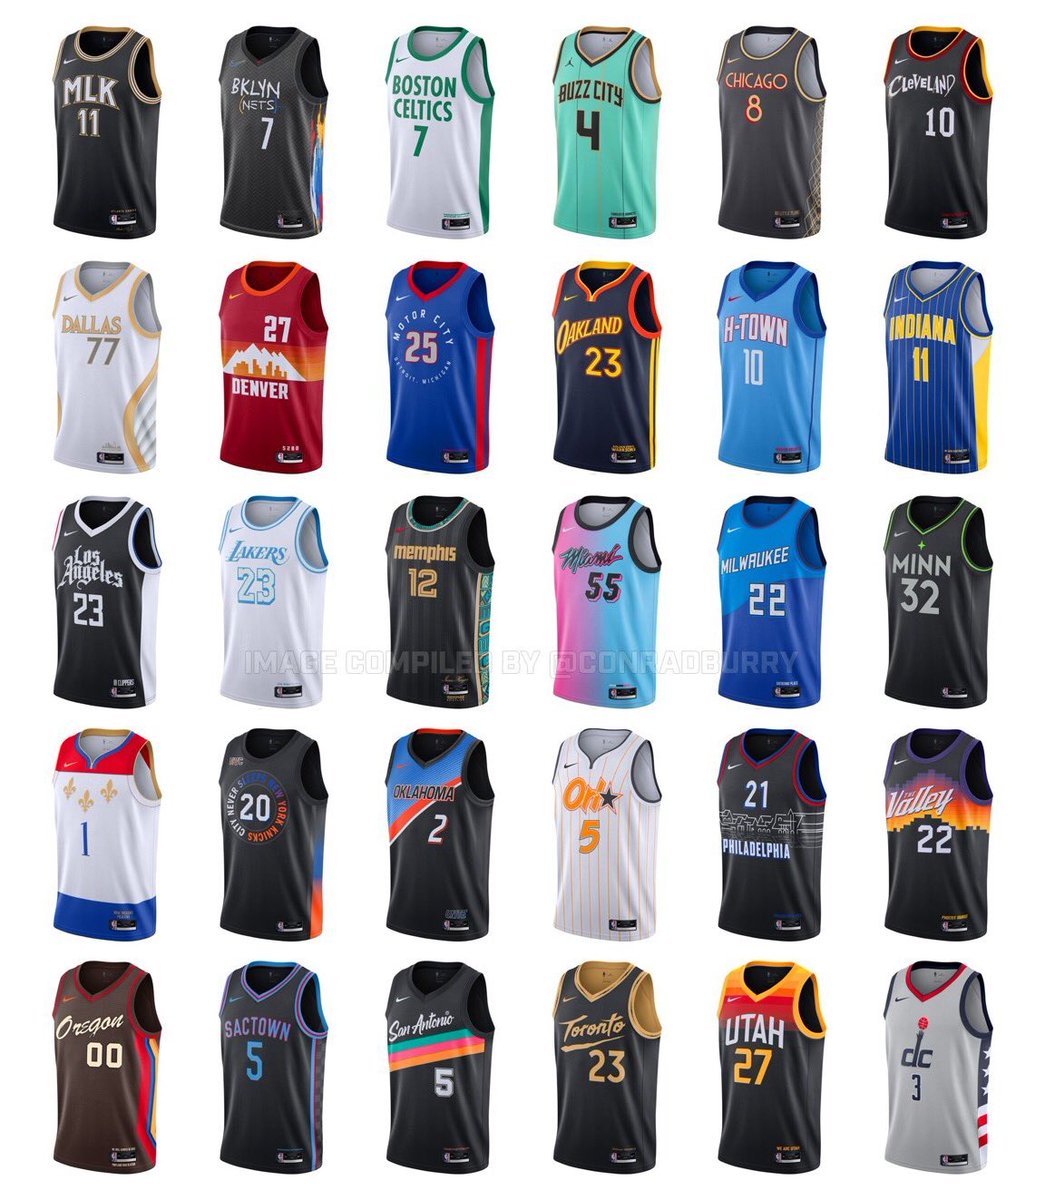 تويتر \ Gigantes del Basket على تويتر: "Todas las camisetas City Edition para esta temporada en la NBA. ¿Con cuál te quedas? 📷@conradburry https://t.co/1Qqmyl9dF4"